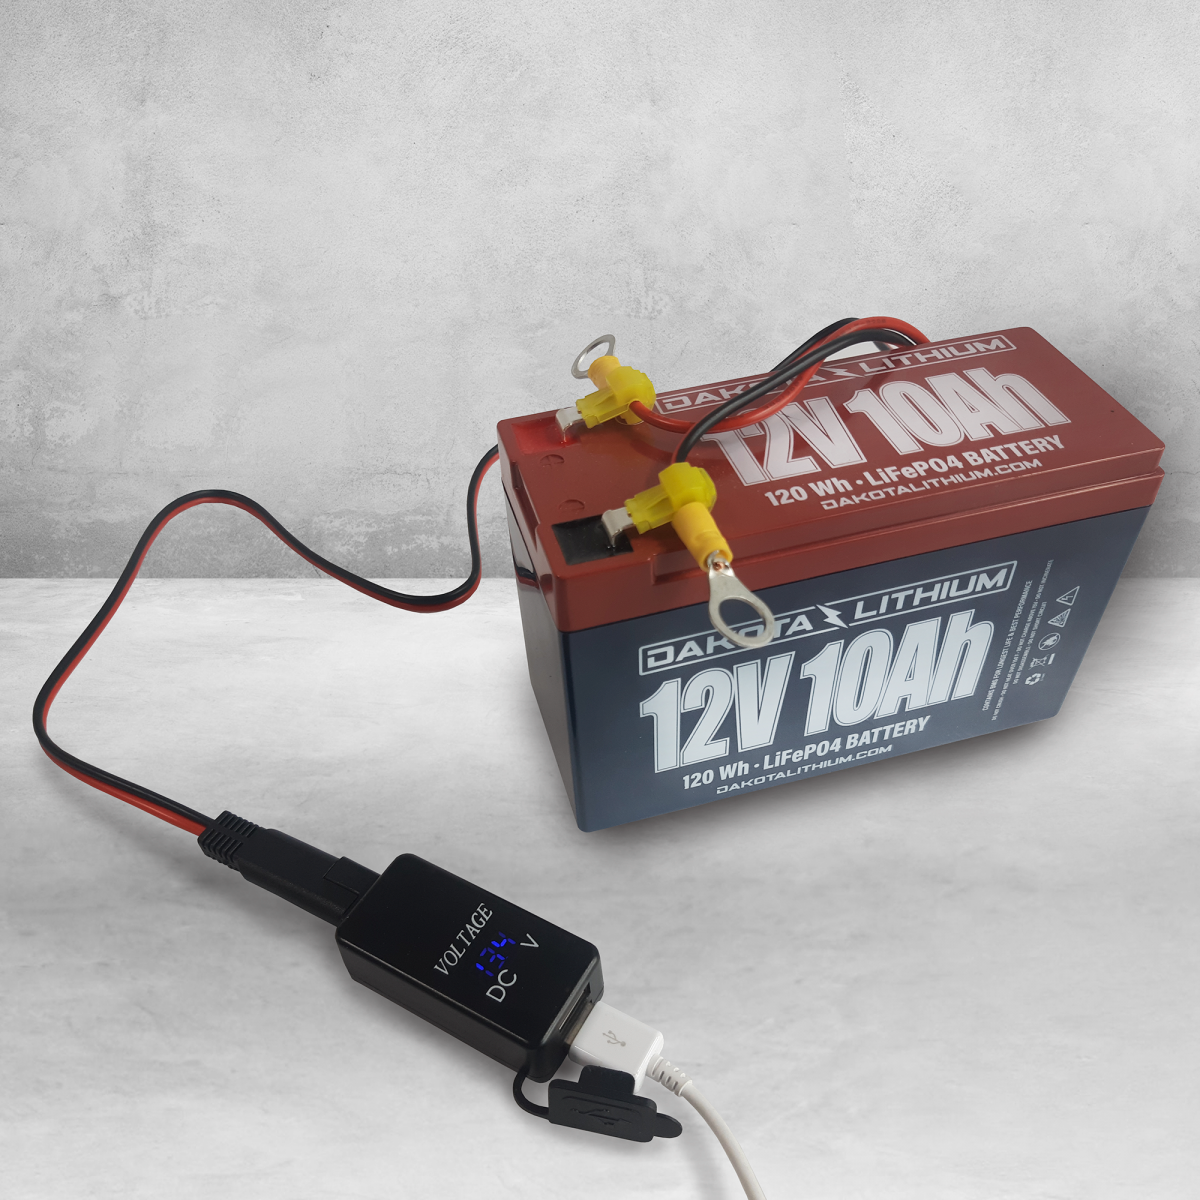 Dakota Lithium | USB Phone Charger, Voltmeter, &amp; Terminal Adapter Wiring Kit